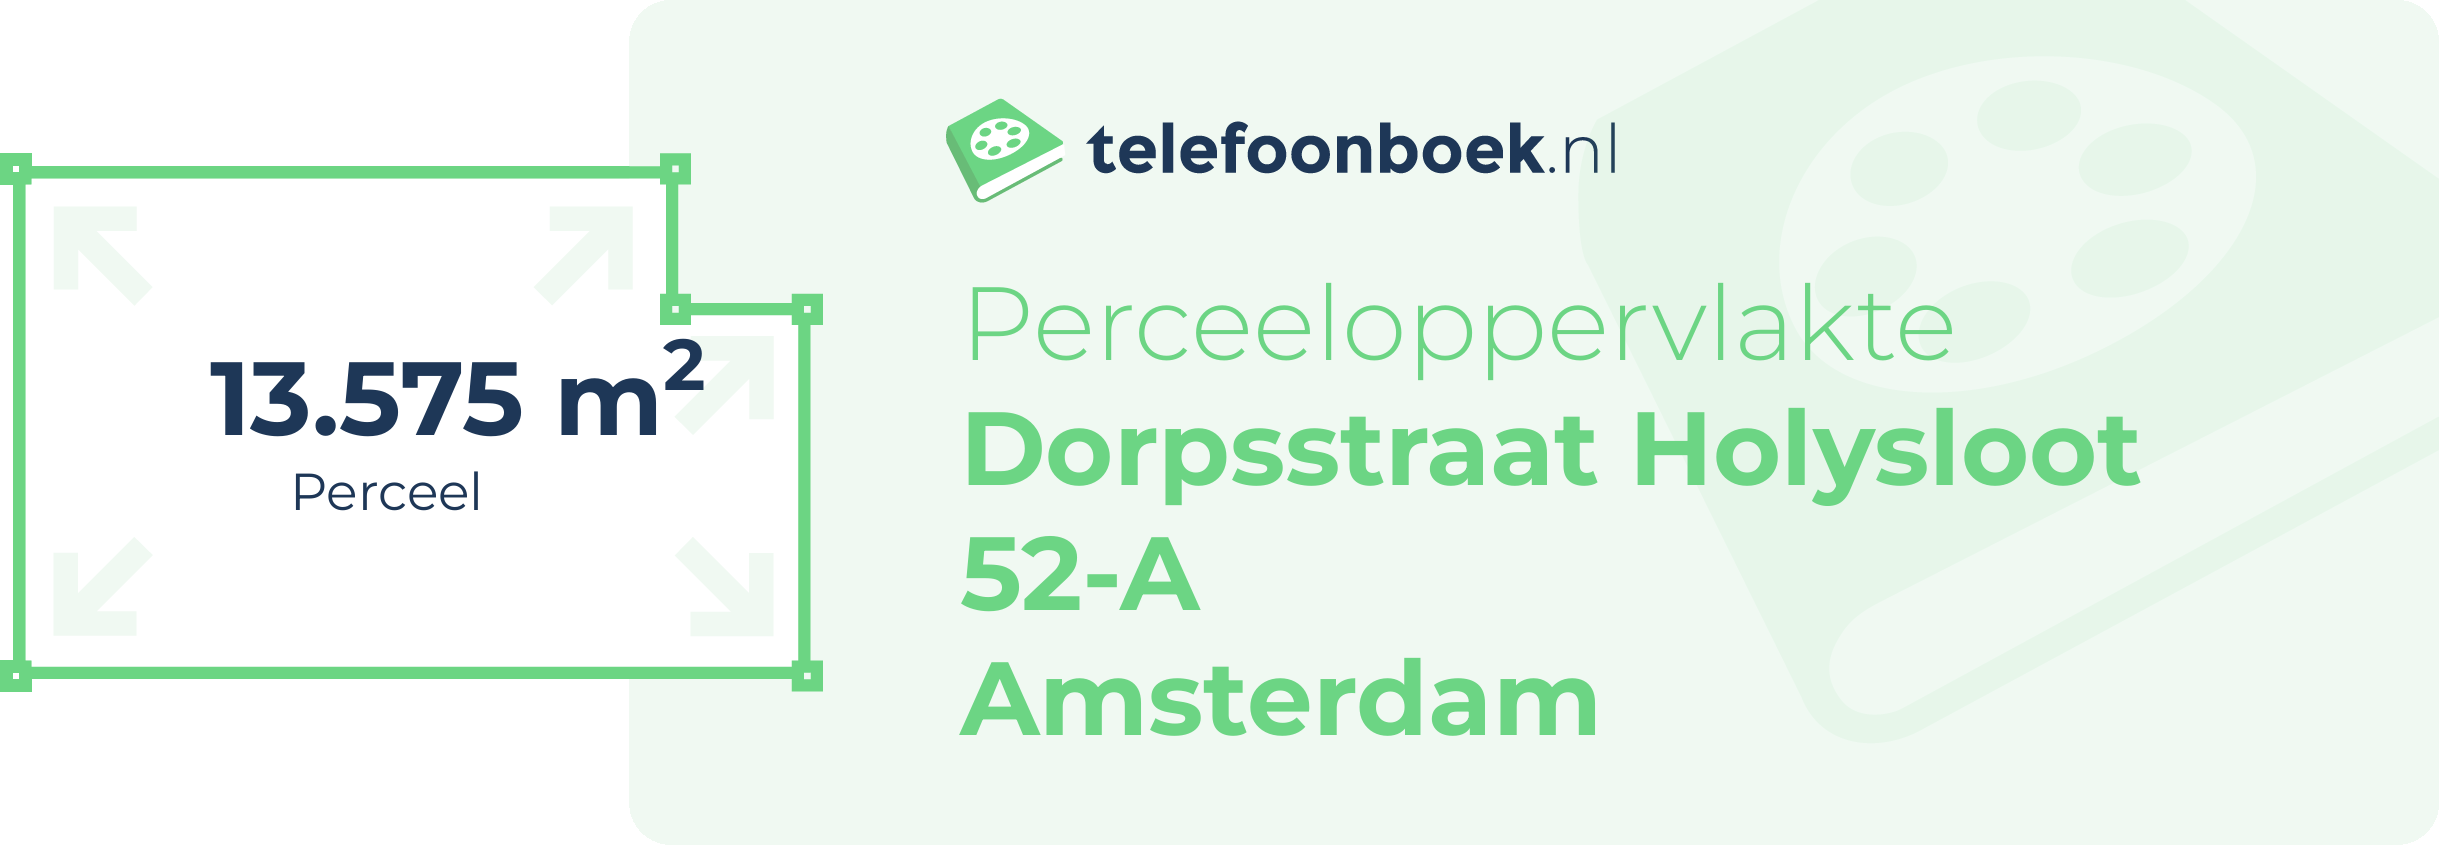 Perceeloppervlakte Dorpsstraat Holysloot 52-A Amsterdam